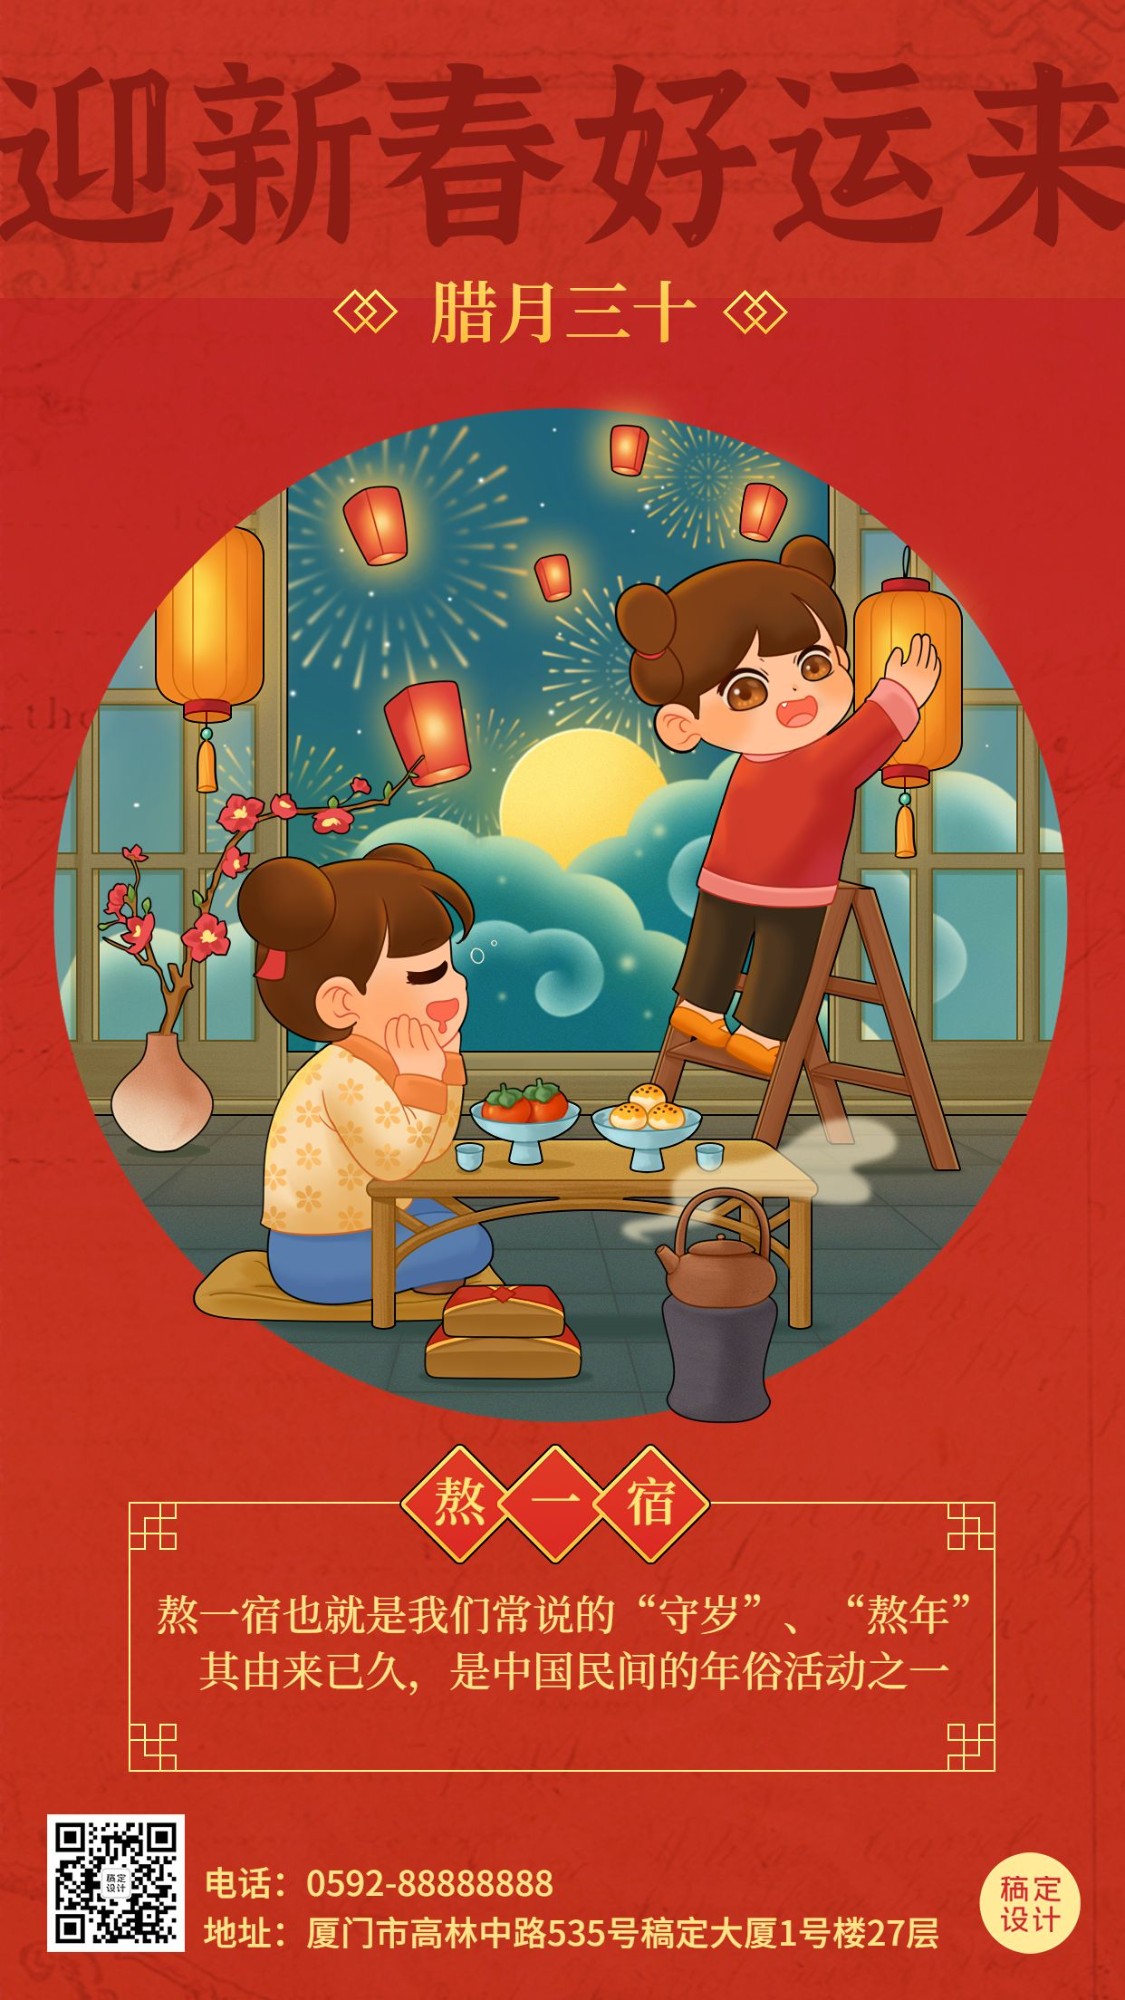 春节新年年前祝福系列手机海报